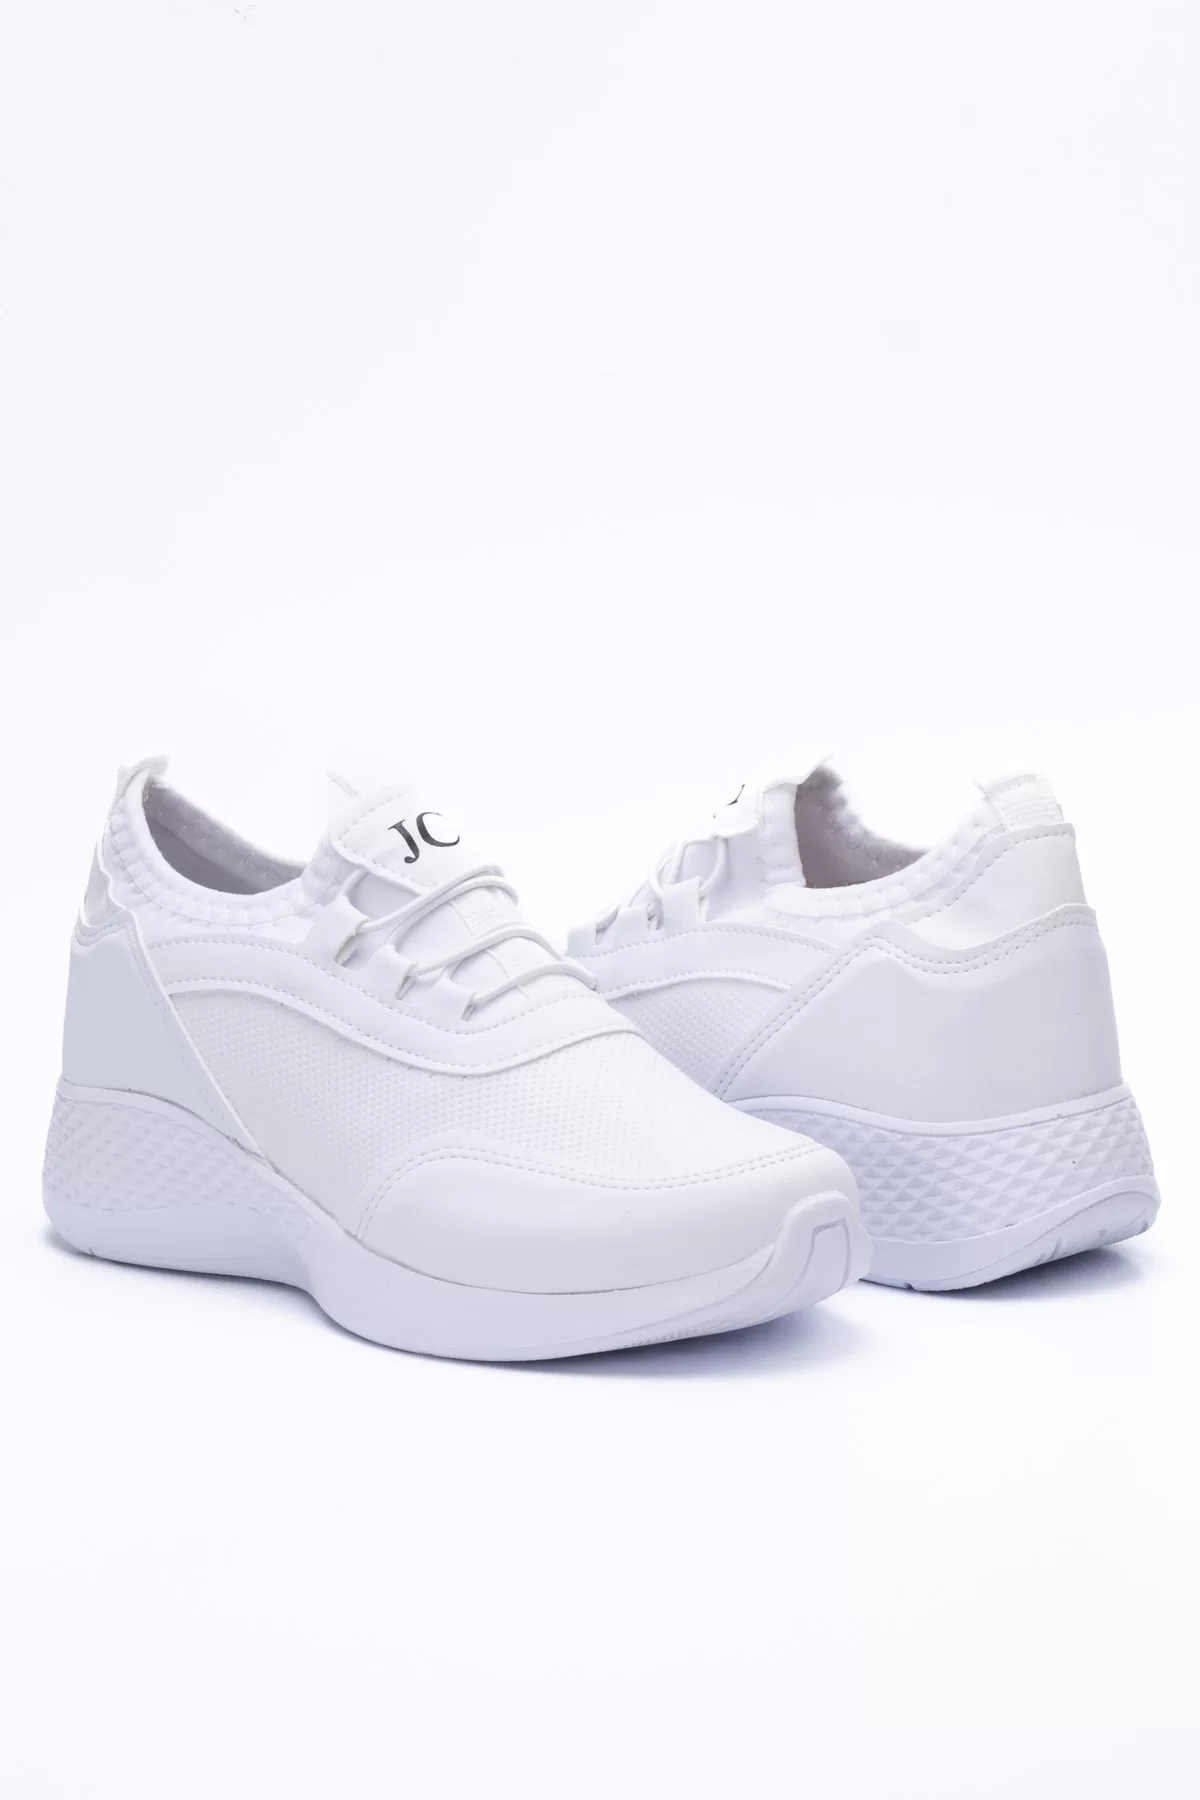 Kadın Sneaker 3005 - Beyaz Gri